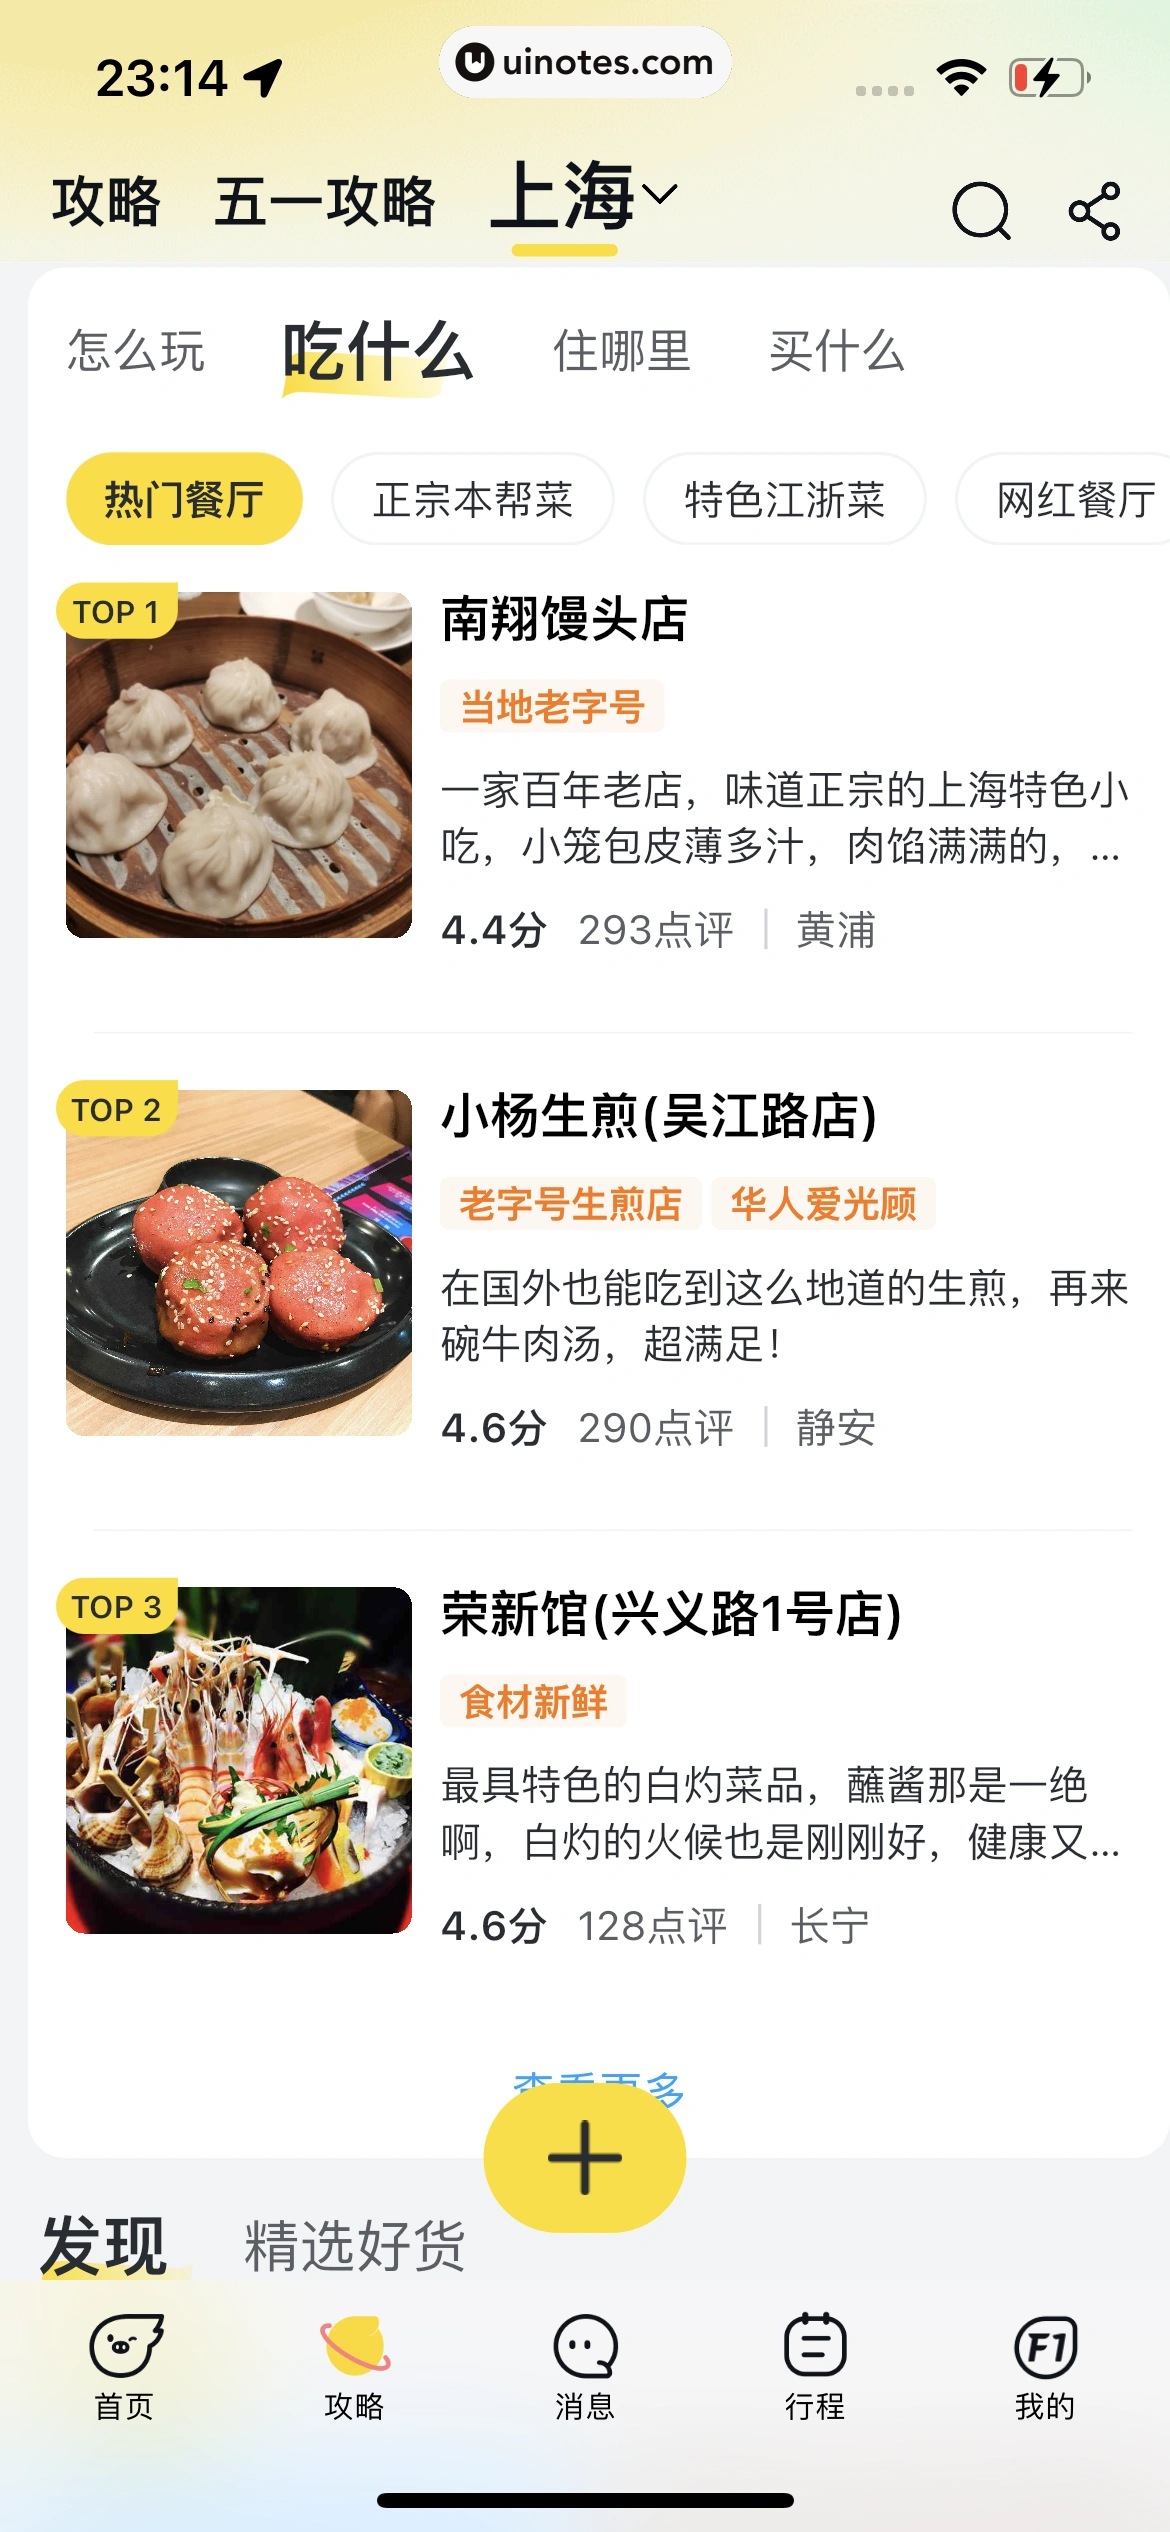 飞猪旅行 App 截图 825 - UI Notes